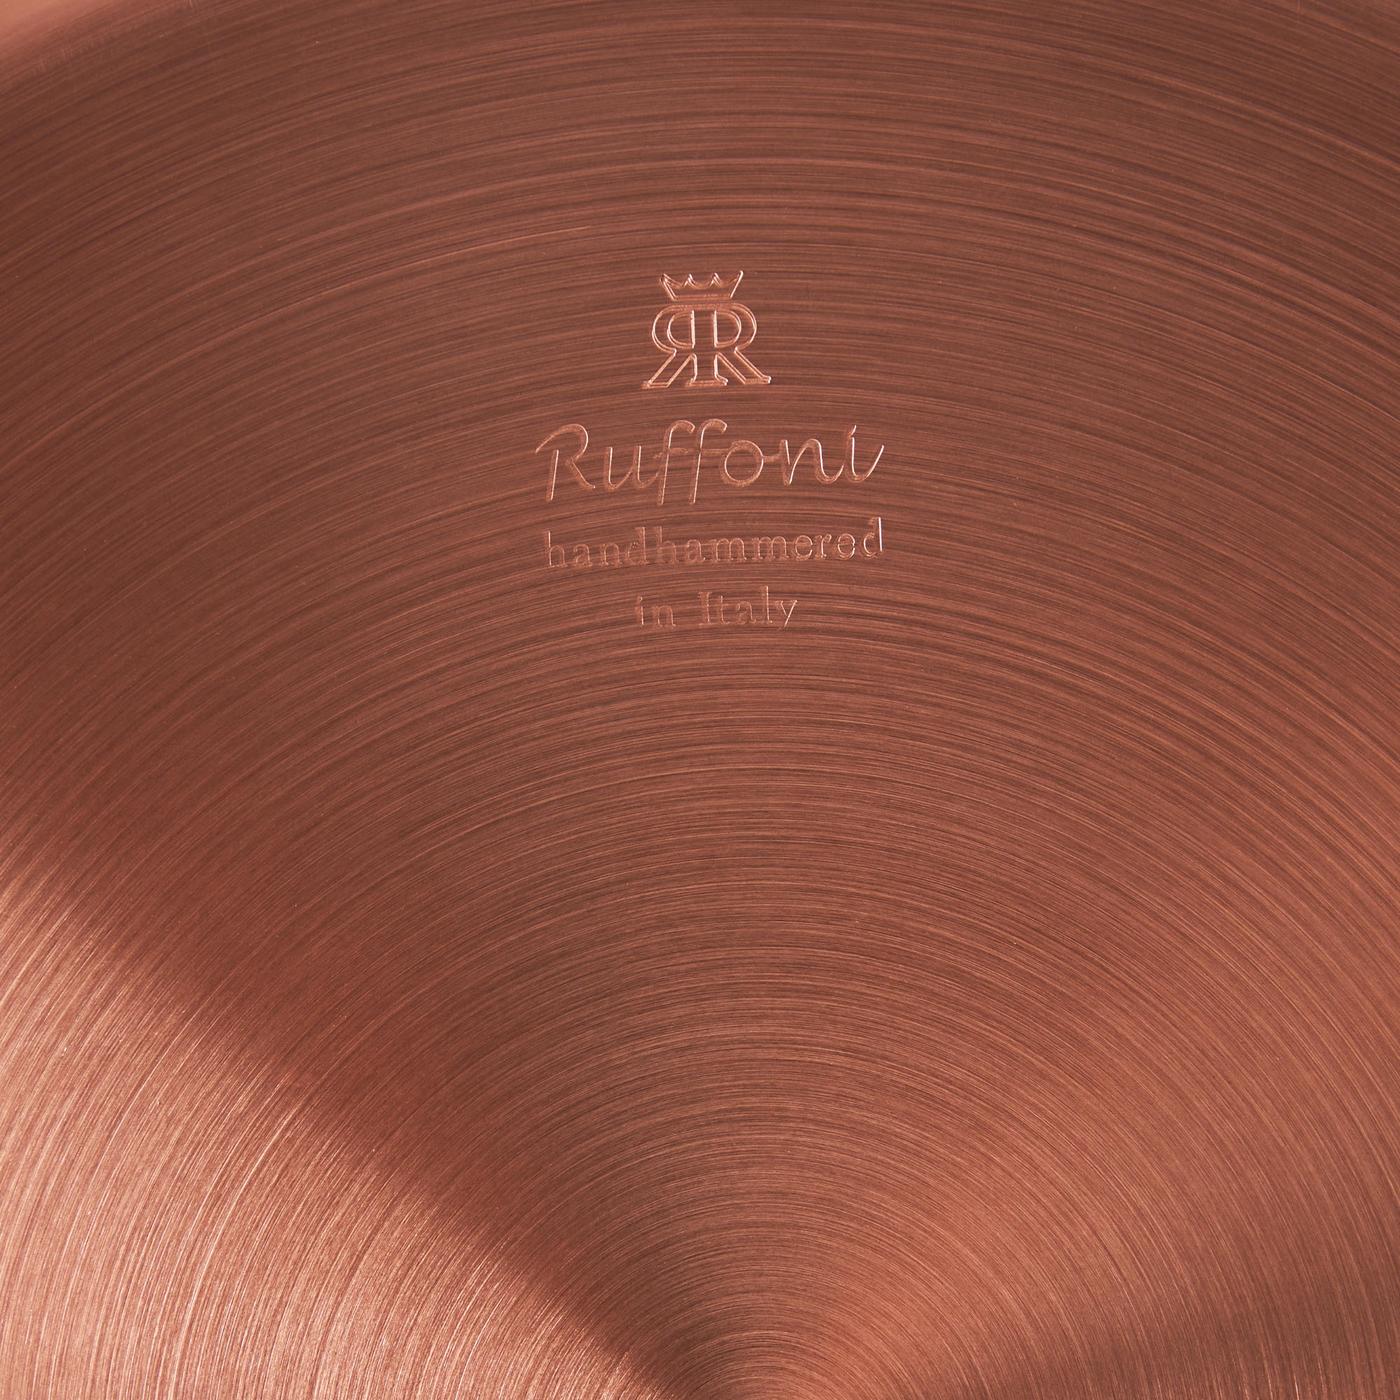 Ruffoni Symphonia Cupra Copper Soup Pot, 4 qt.